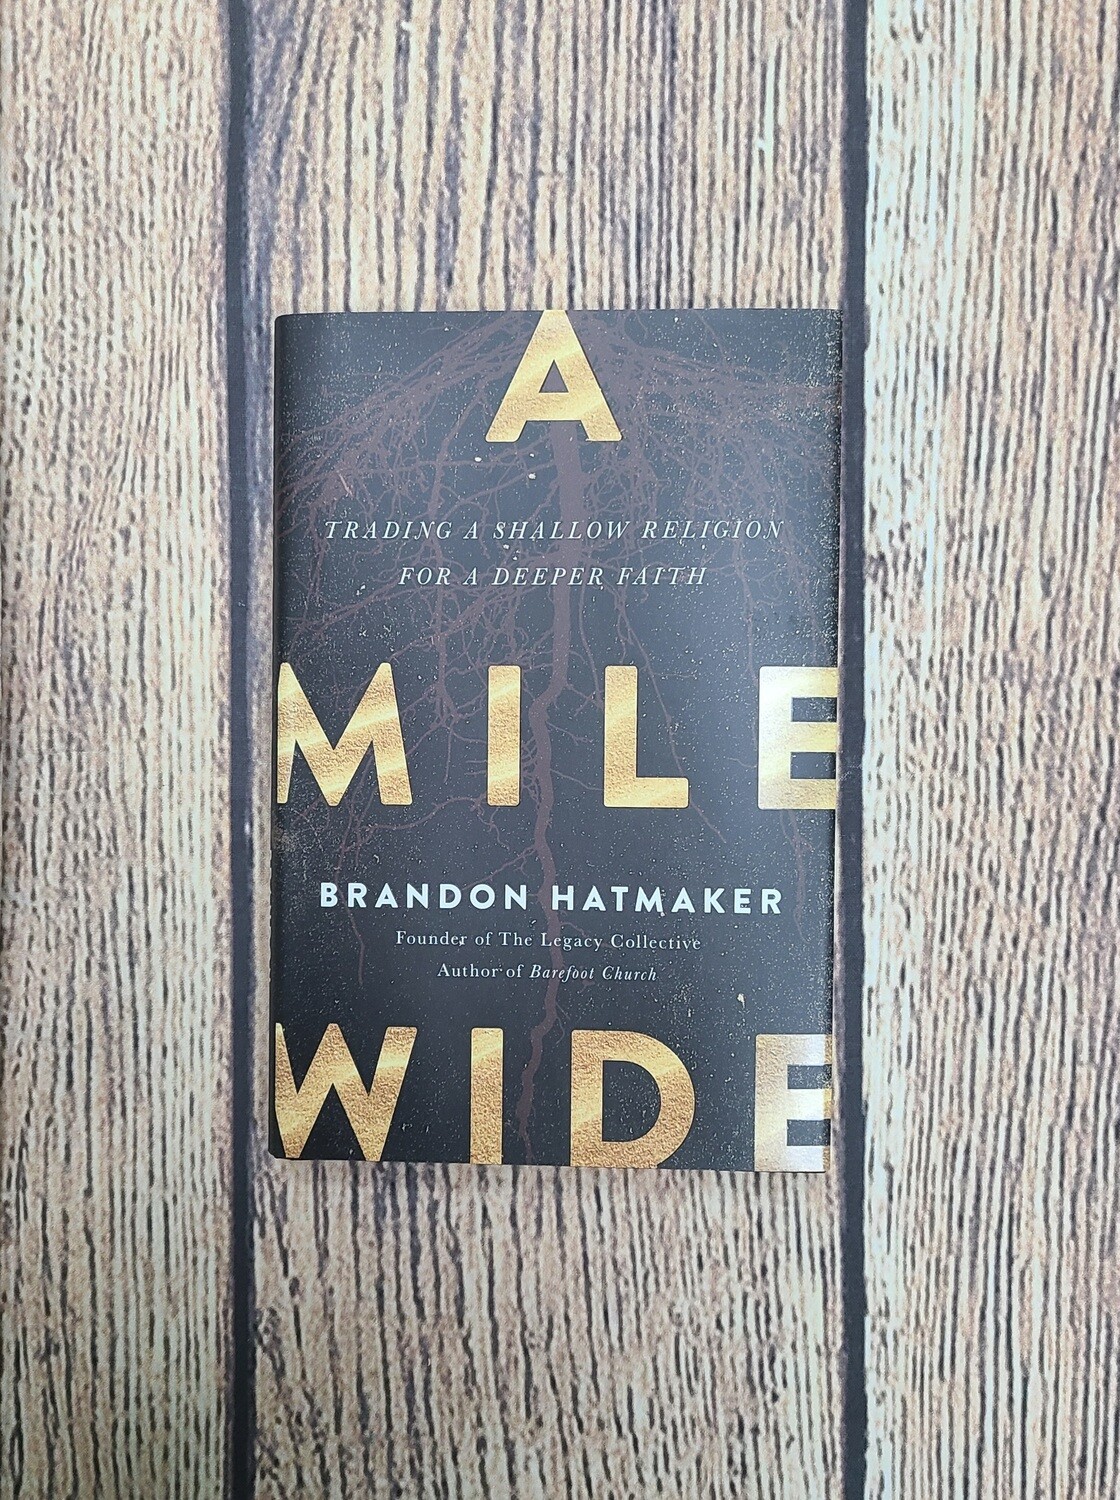 A Mile Wide by Brandon Hatmaker